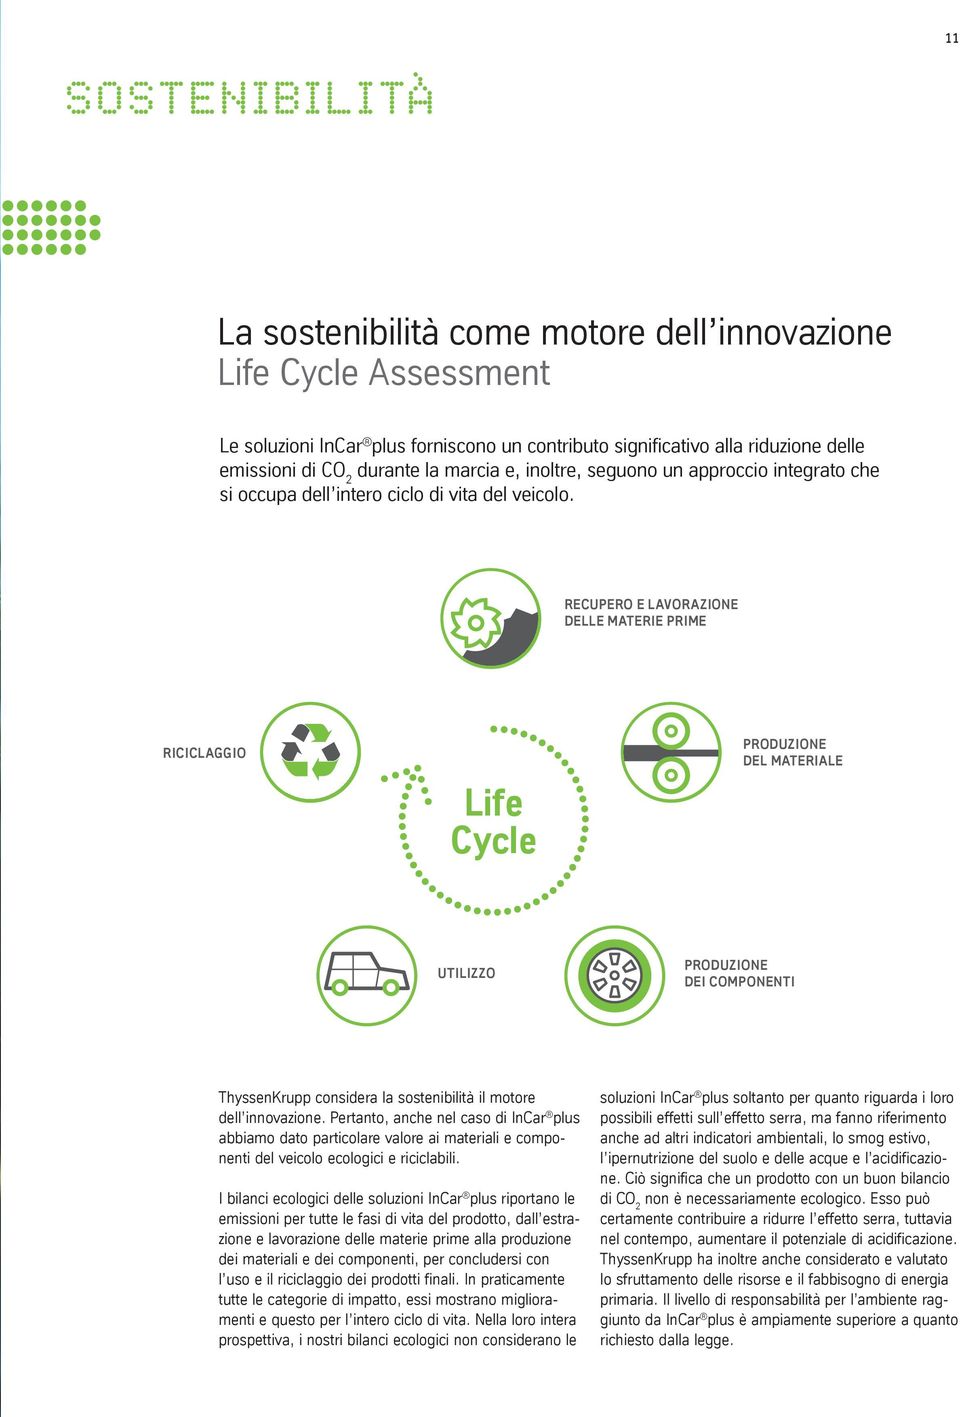 RECUPERO E LAVORAZIONE DELLE MATERIE PRIME RICICLAGGIO Life Cycle PRODUZIONE DEL MATERIALE UTILIZZO PRODUZIONE DEI COMPONENTI ThyssenKrupp considera la sostenibilità il motore dell innovazione.